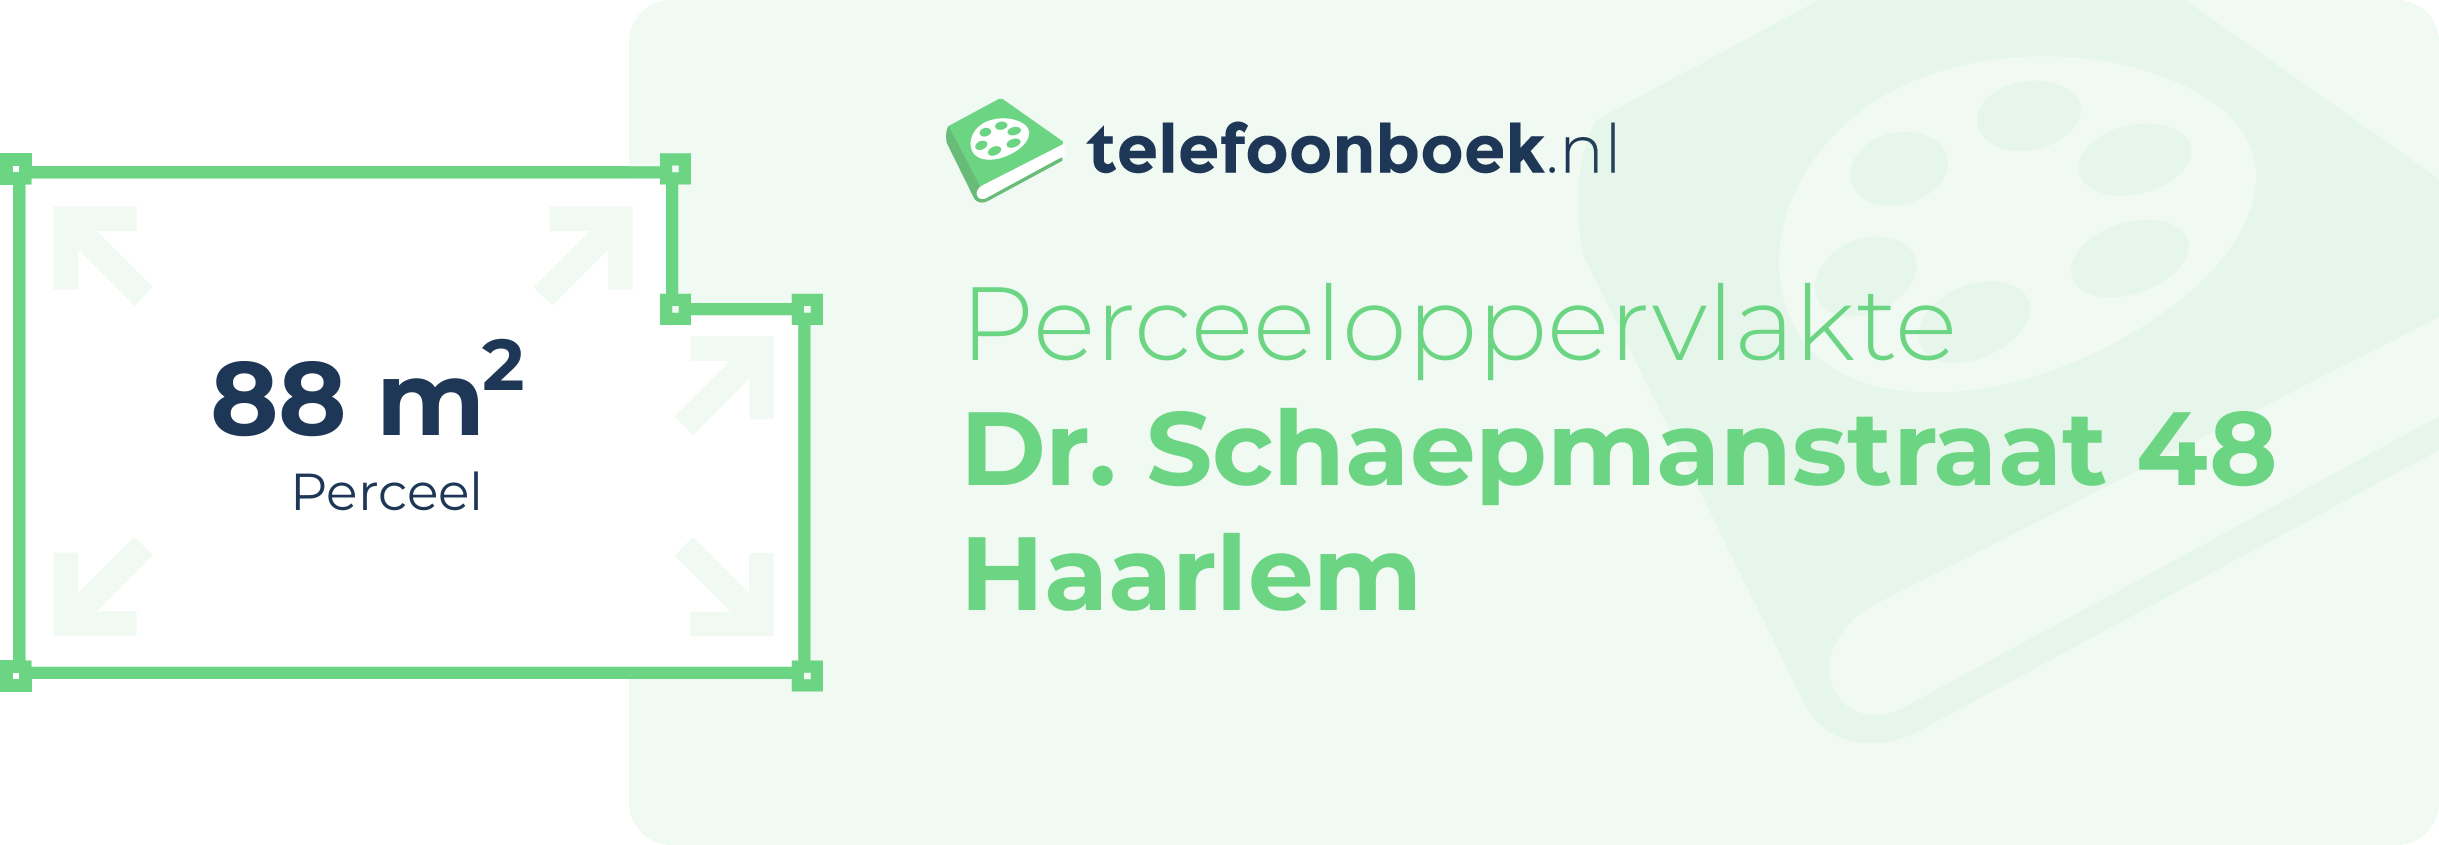 Perceeloppervlakte Dr. Schaepmanstraat 48 Haarlem